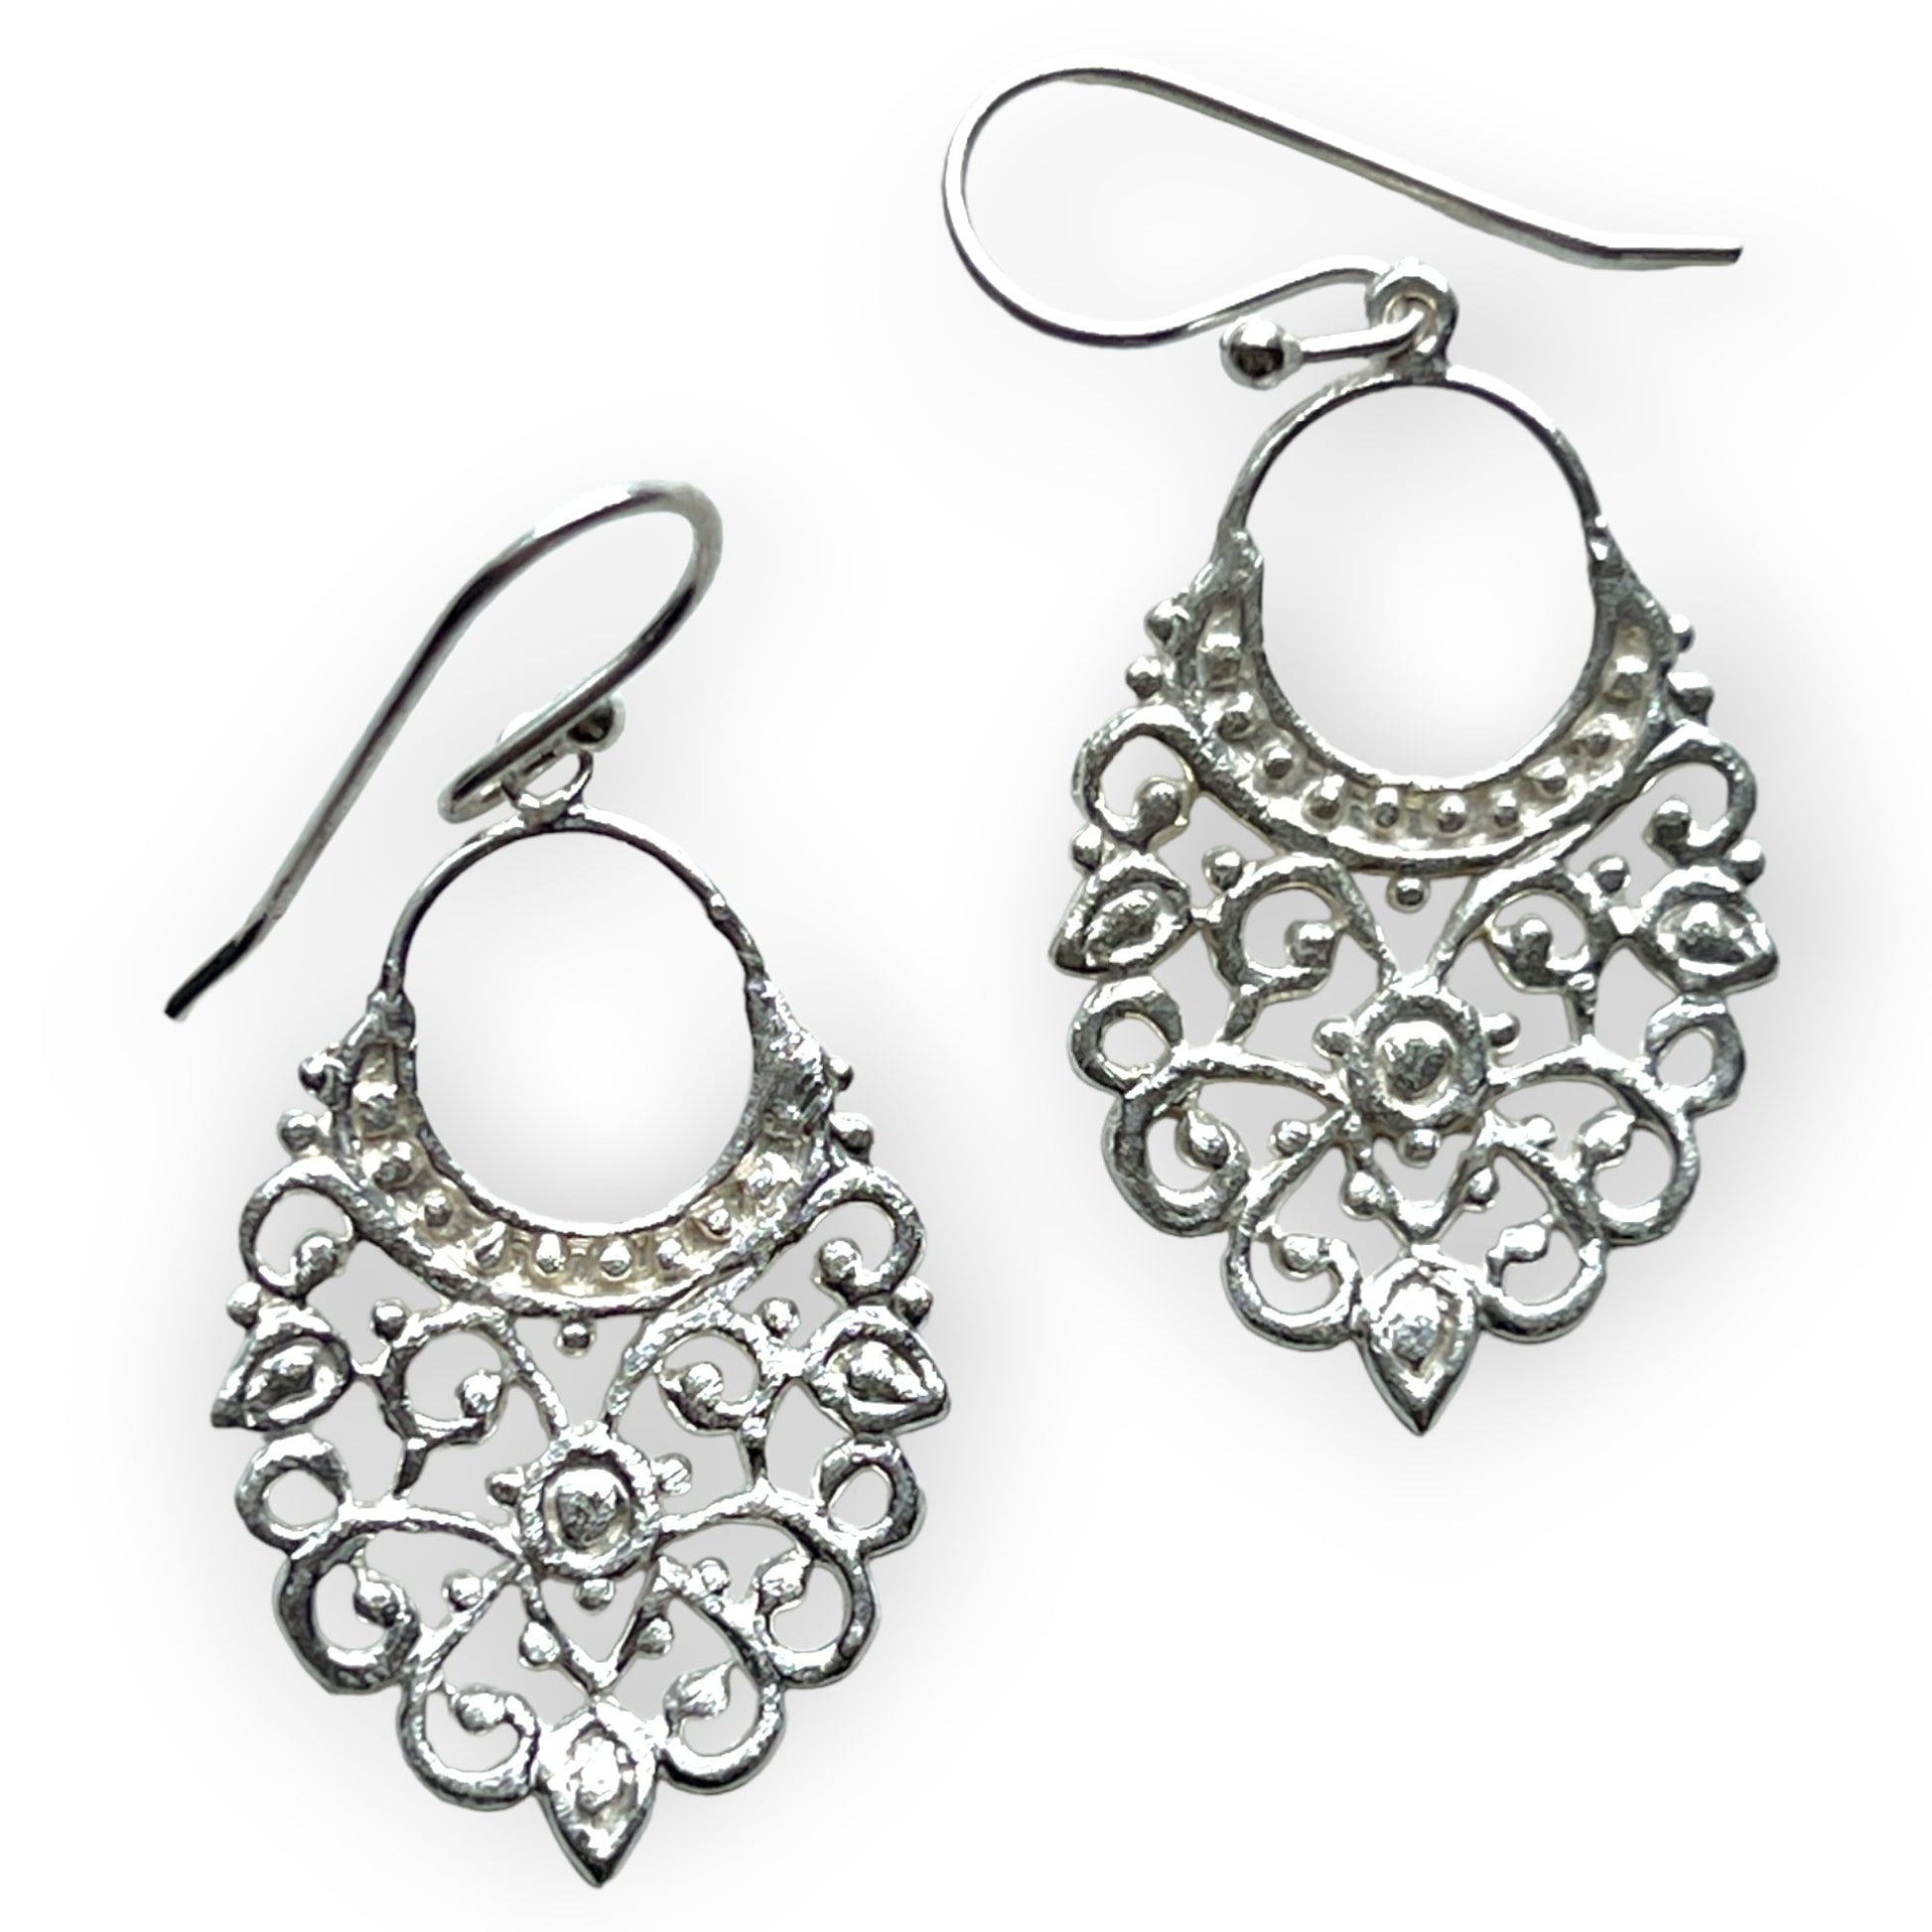 Filigree inspired silver dangling hoop earringsSundara Joon